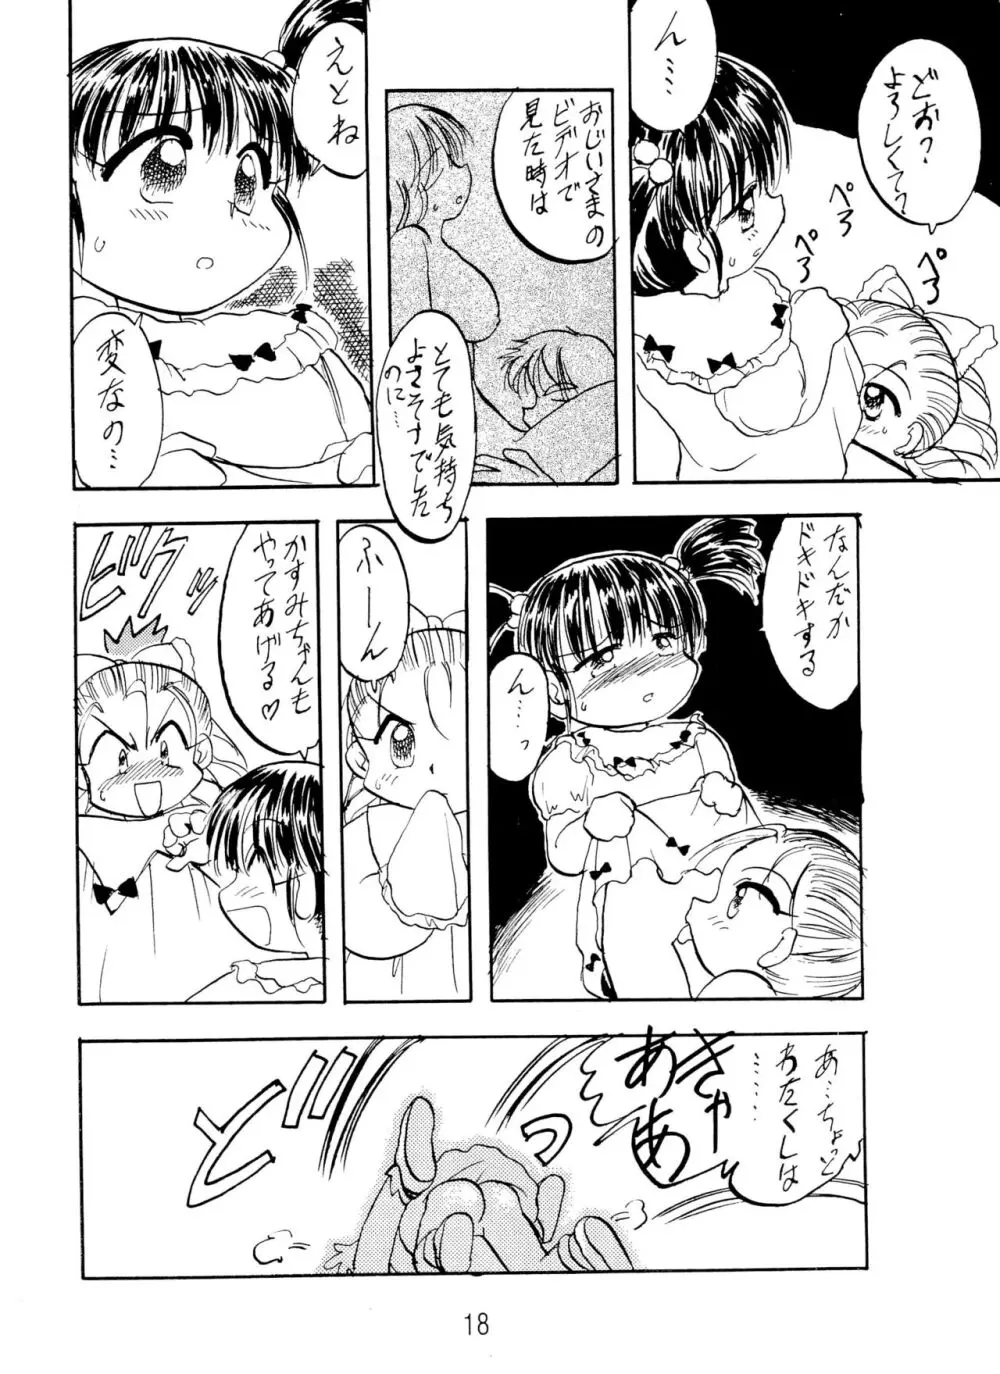 ANNA あ・ん・な・・・ - page18